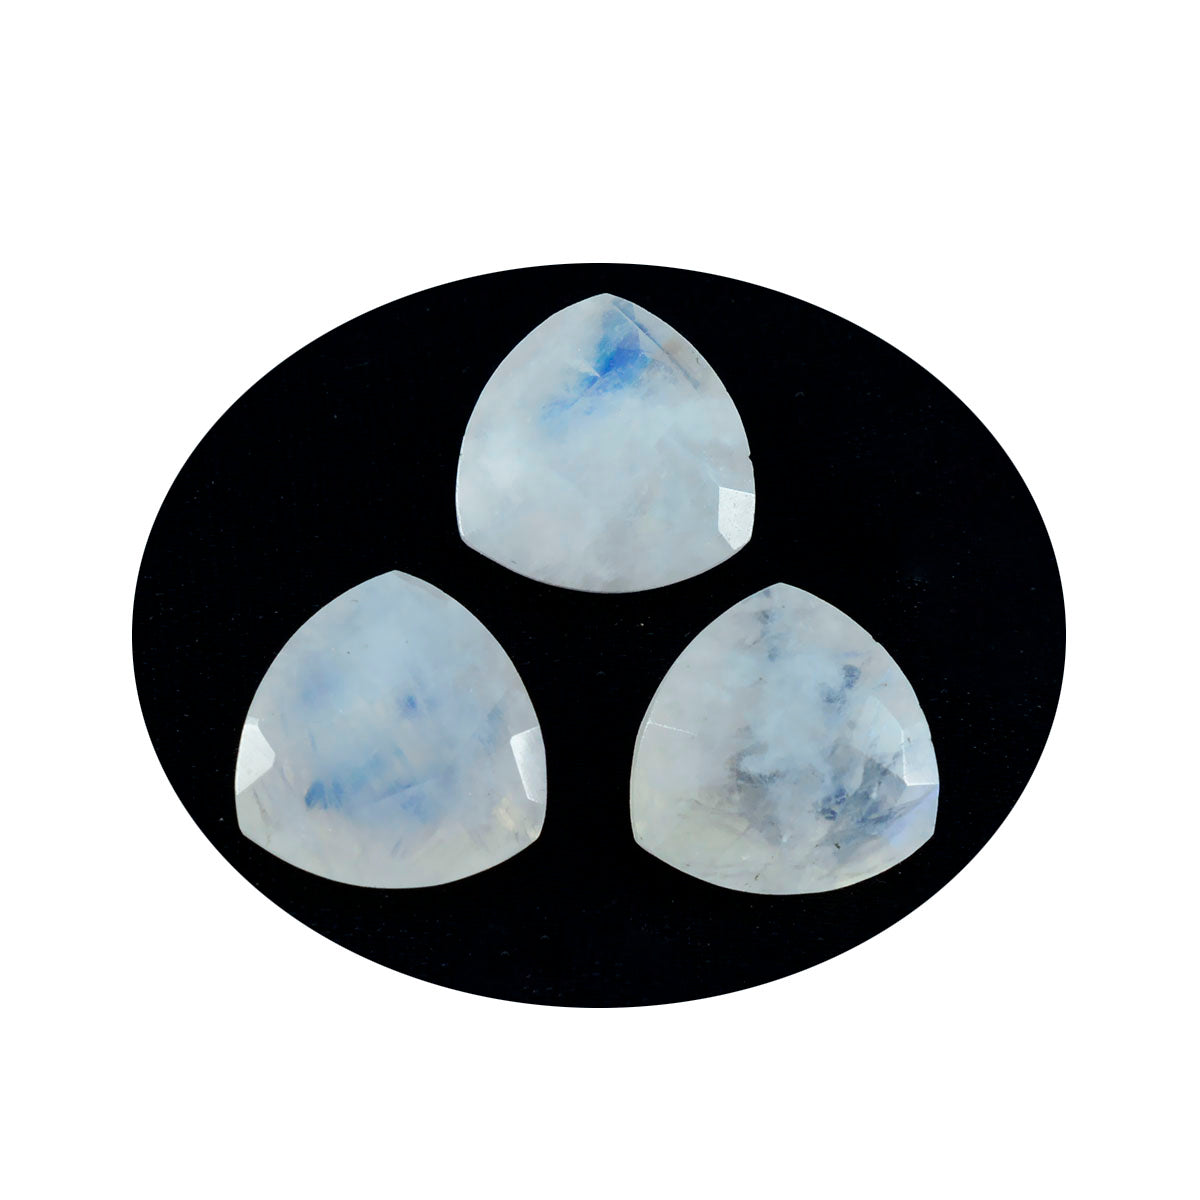 riyogems 1 шт., белый радужный лунный камень, ограненный 8x8 мм, форма триллиона, красивое качество, свободный драгоценный камень